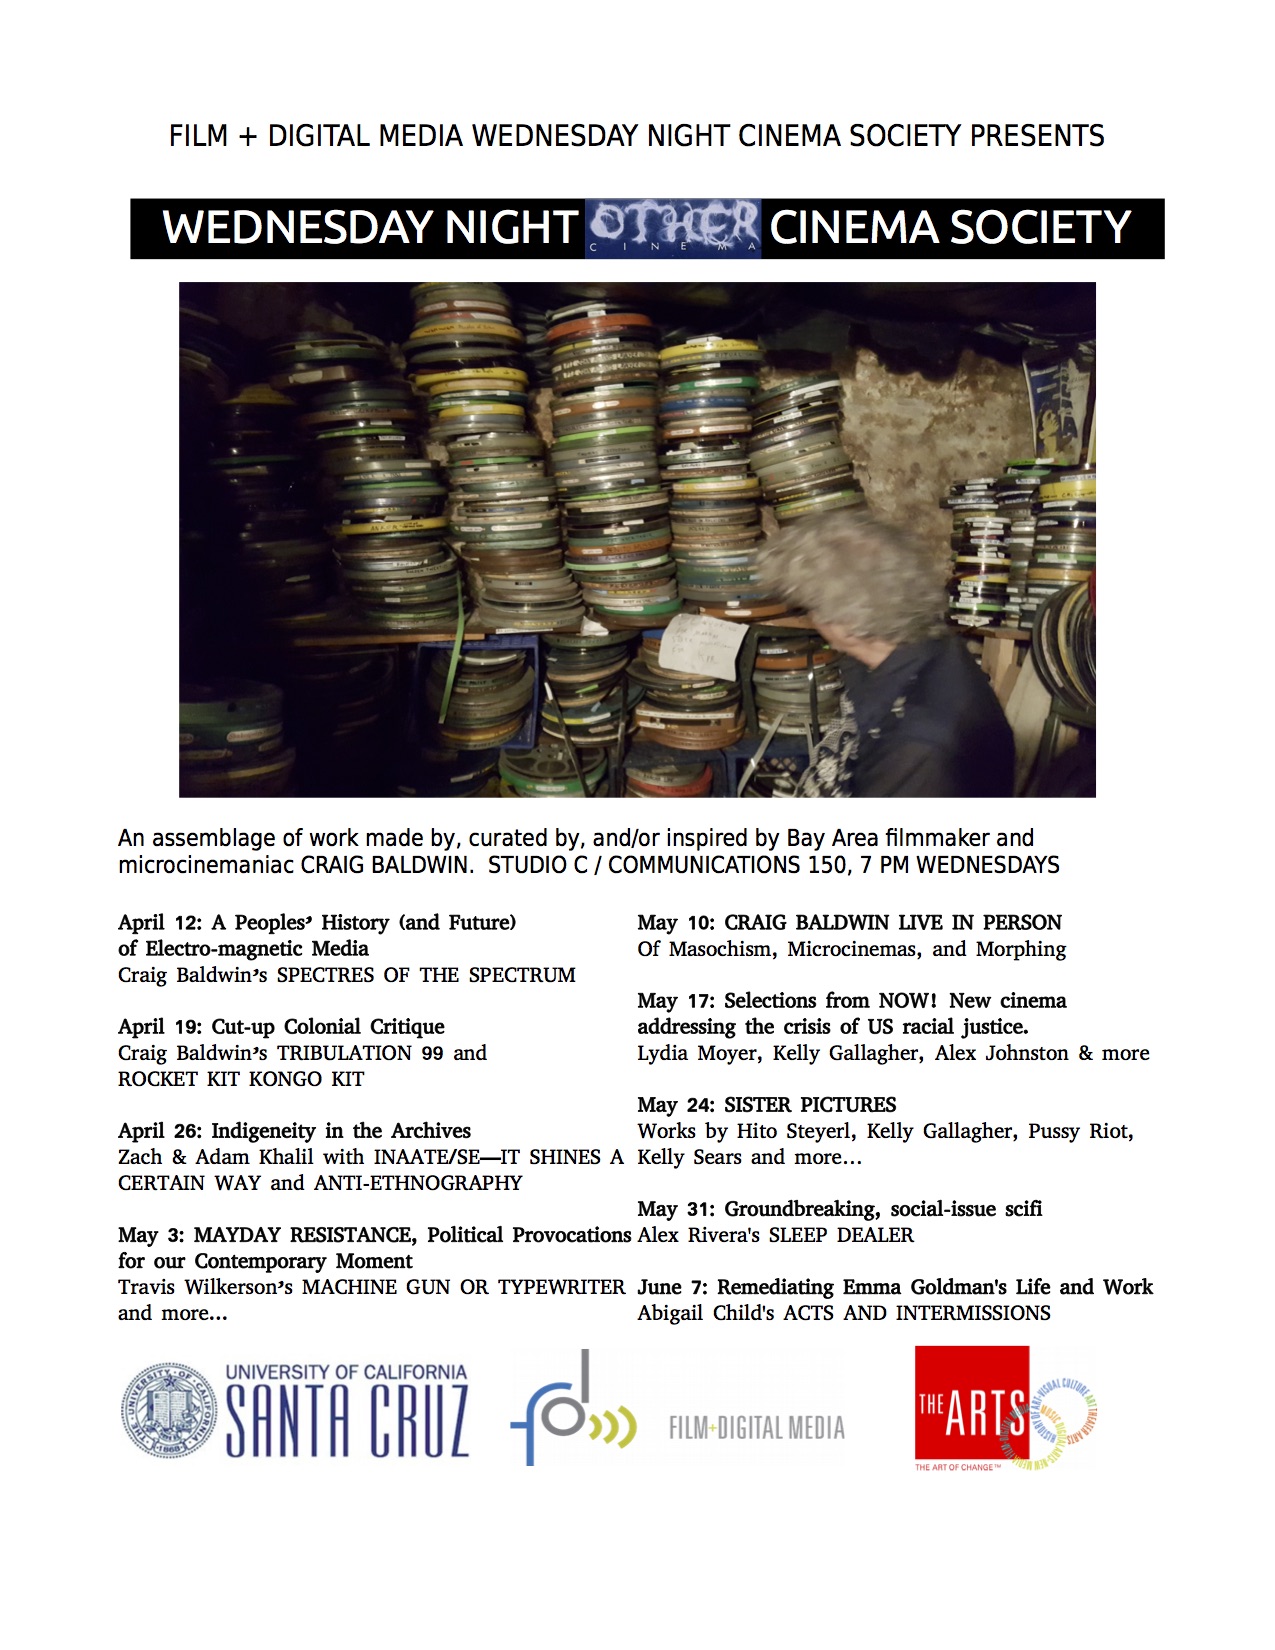 Flyer for Wednesday Night Cinema Society Spring 2017